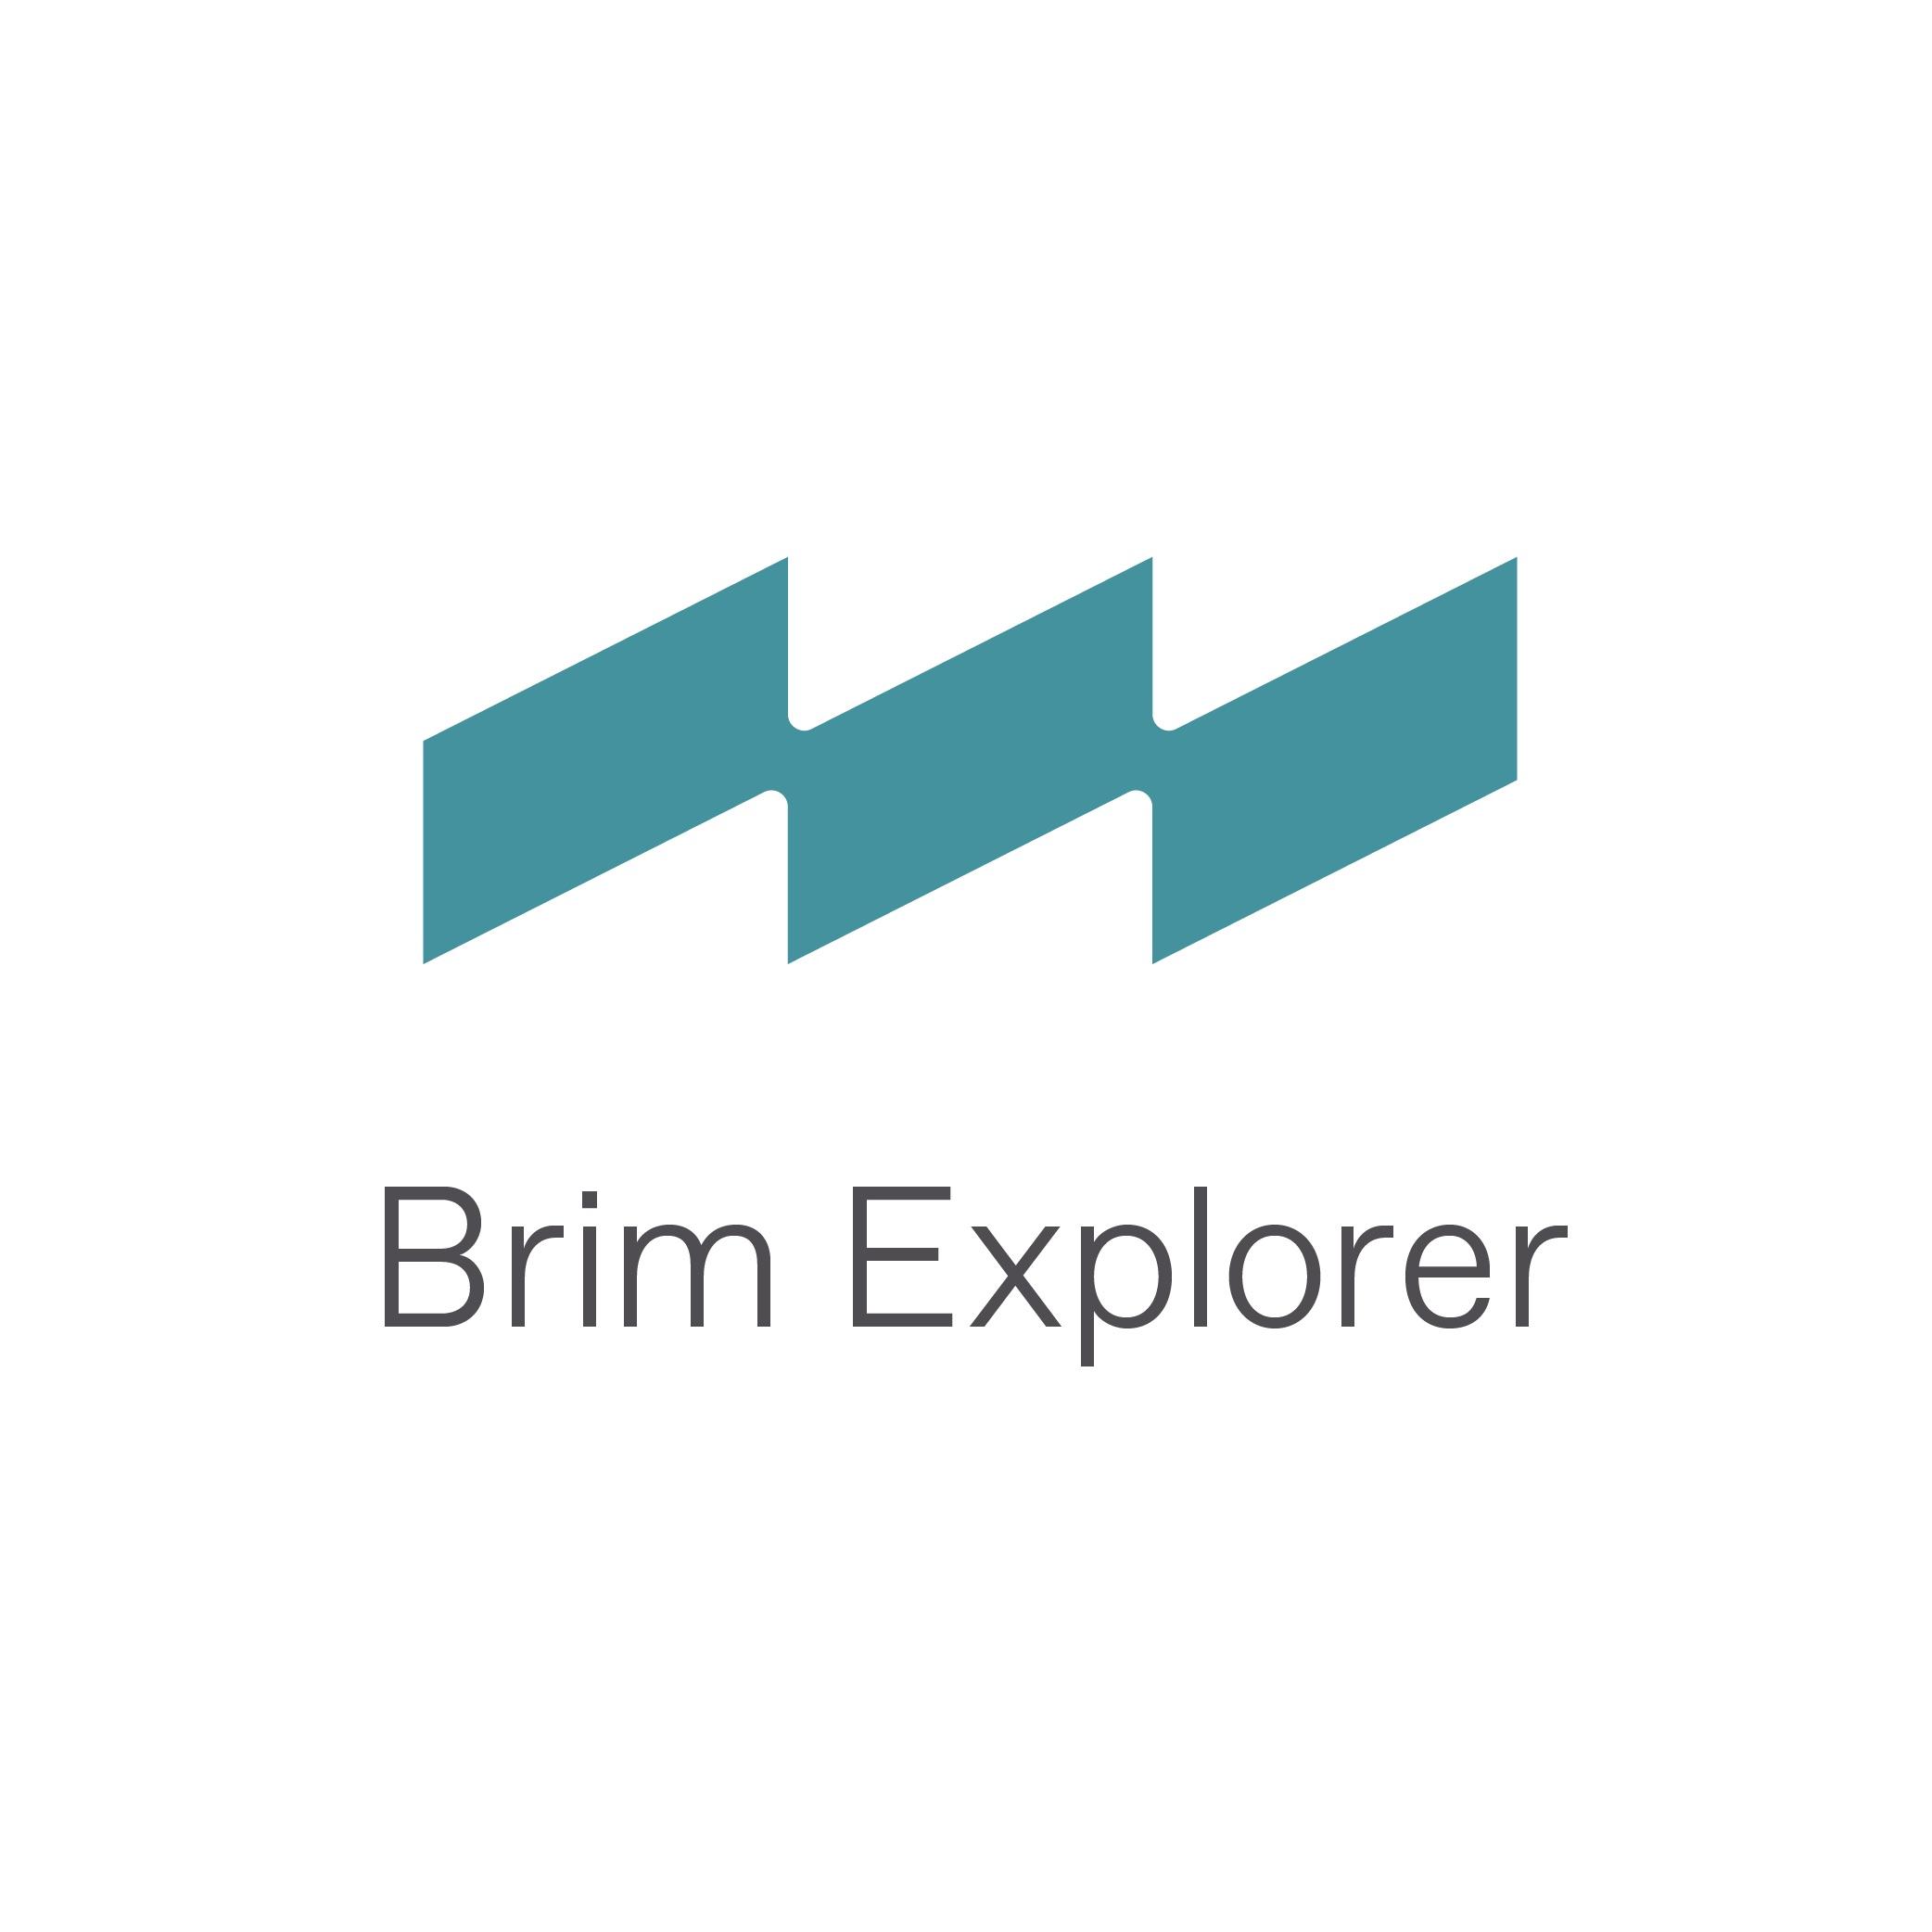 2 Brim Explorer Logo